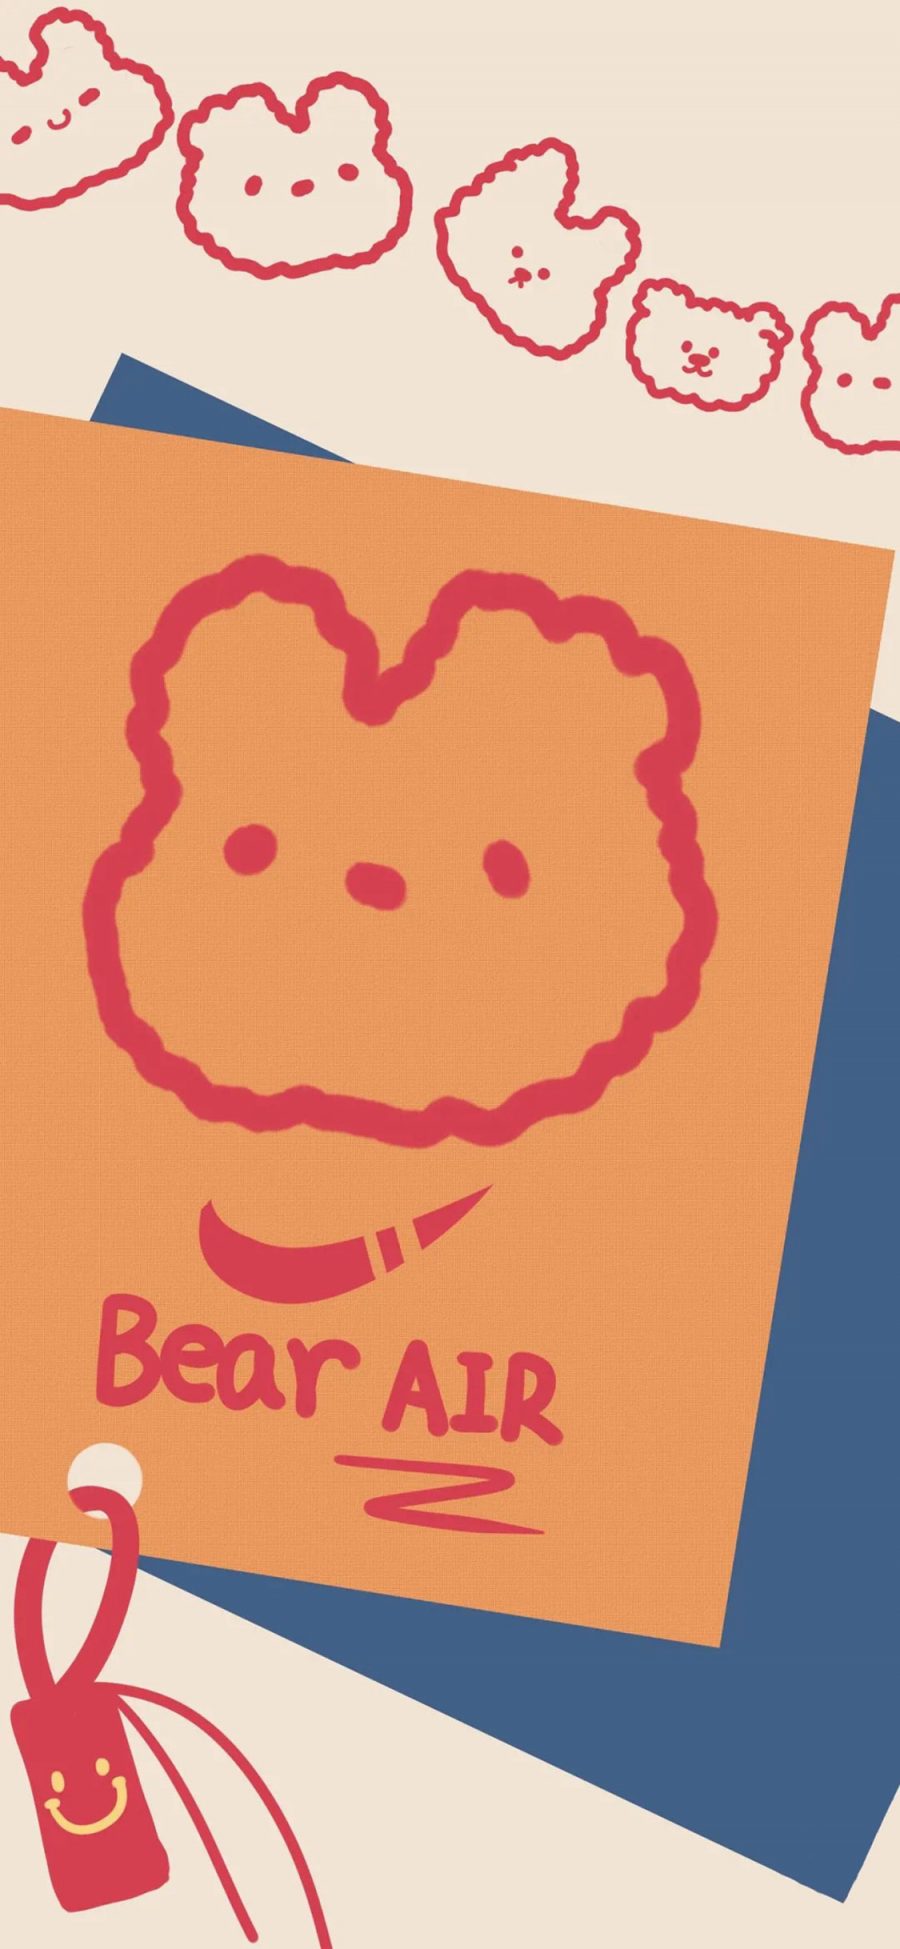 [2436×1125]卡通 小熊 Nike Bear Air 苹果手机动漫壁纸图片